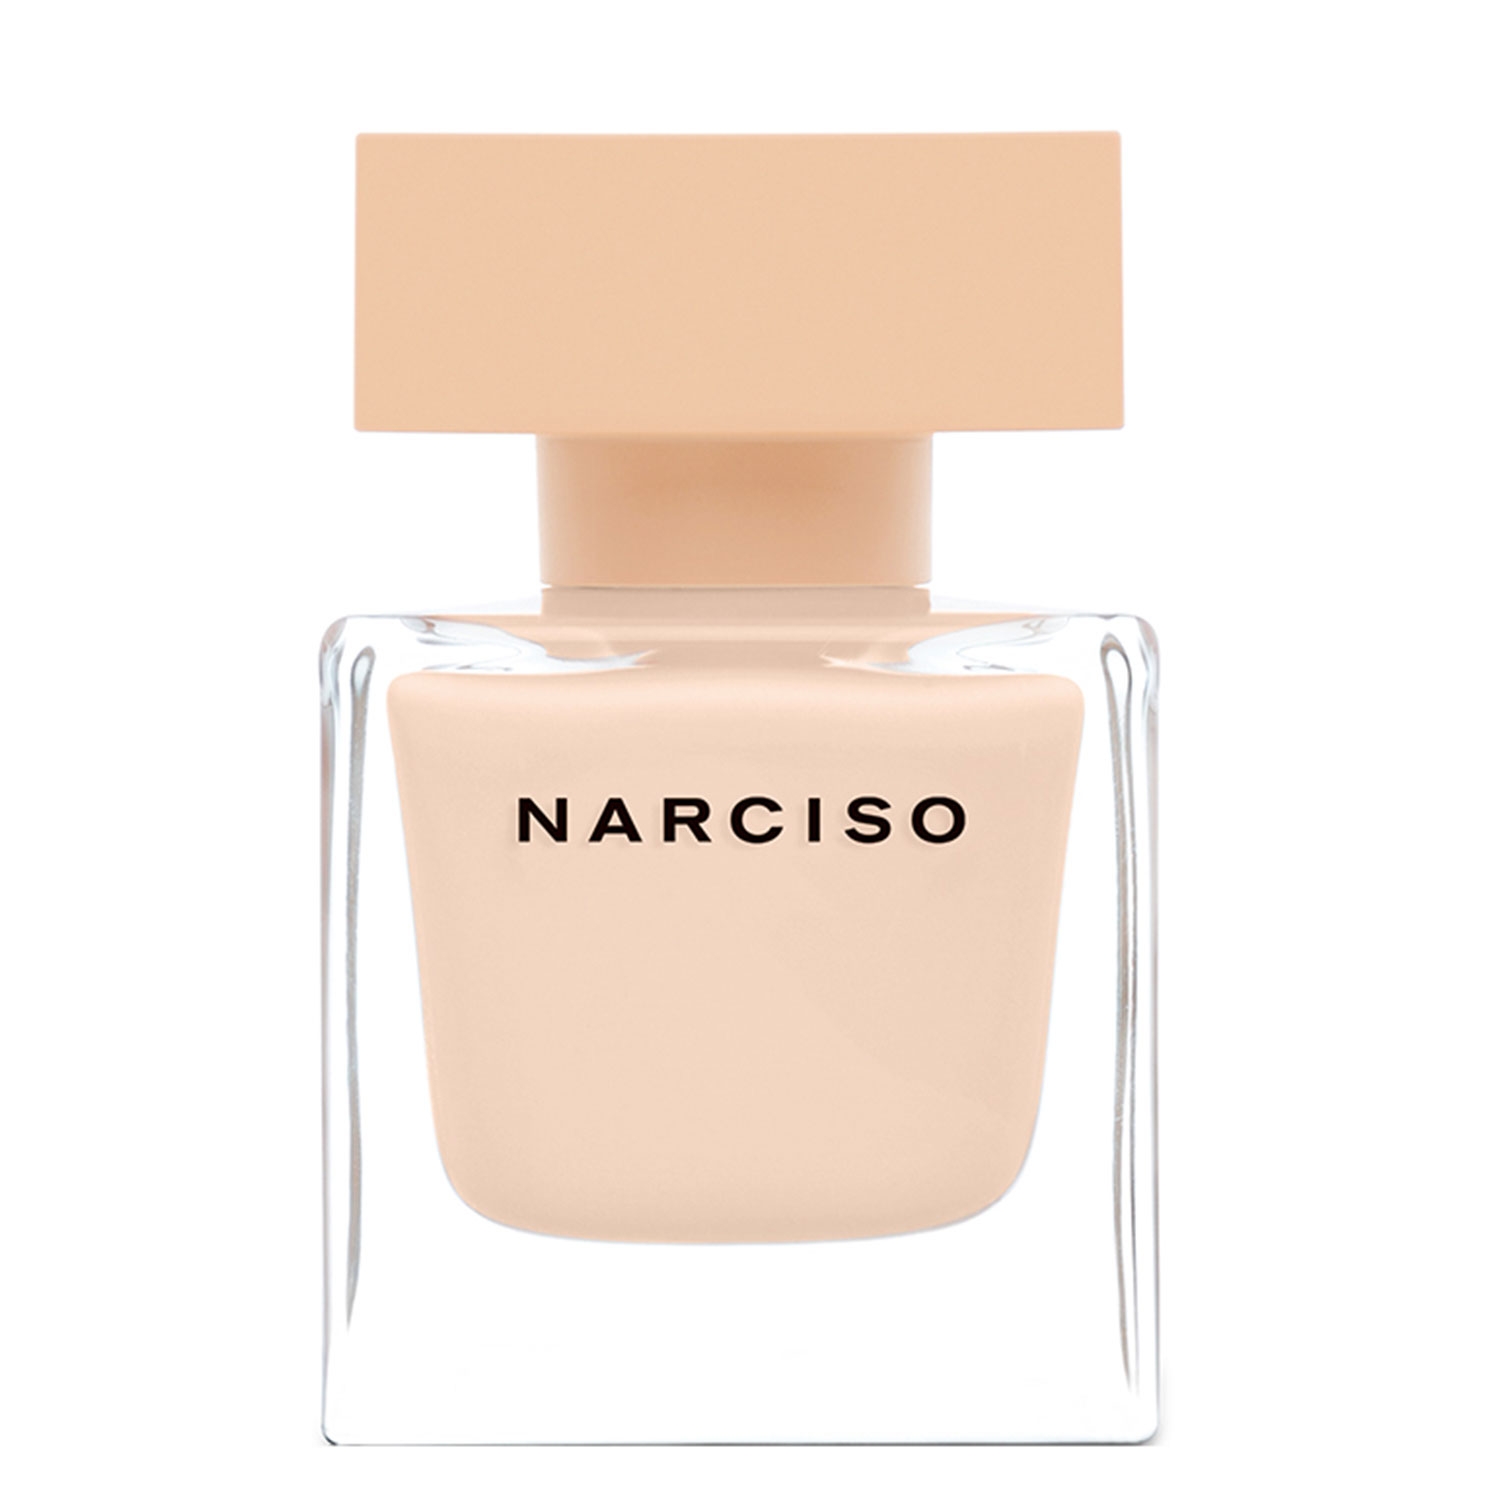 Produktbild von Narciso - Eau de Parfum Poudrée